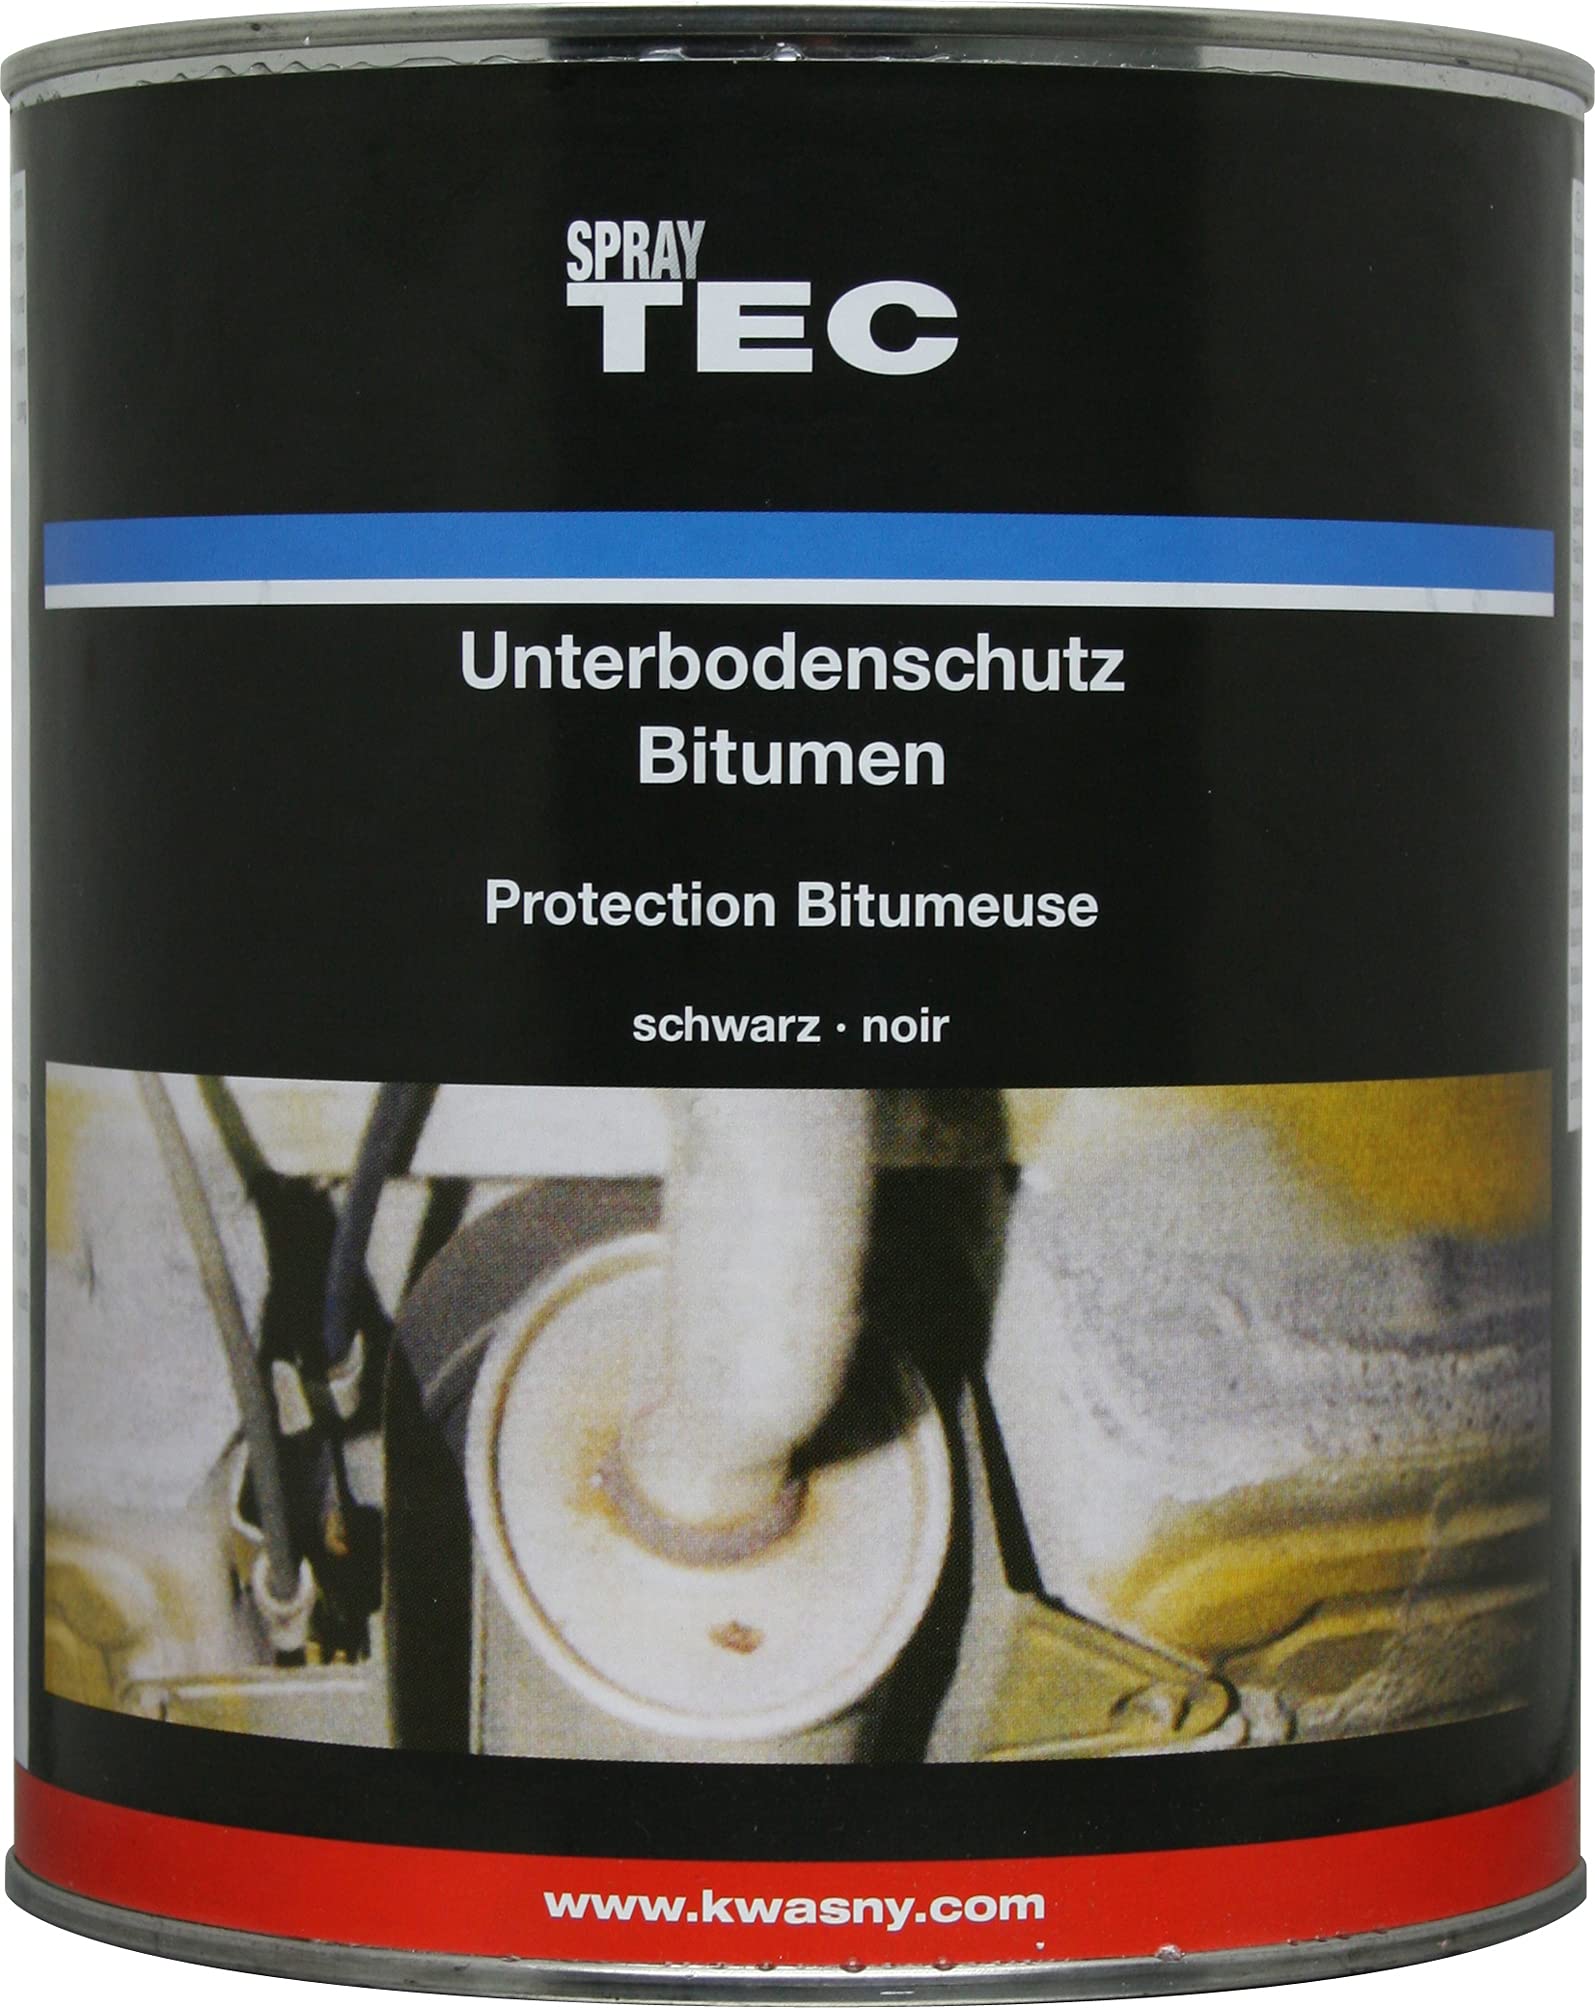 AutoK Unterbodenschutz - Unterbodenschutz Bitumen Streichlack, 2500 g, schwarz - Schutz vor Steinschlag, Salz, Rost, Wasser uvm von Kwasny